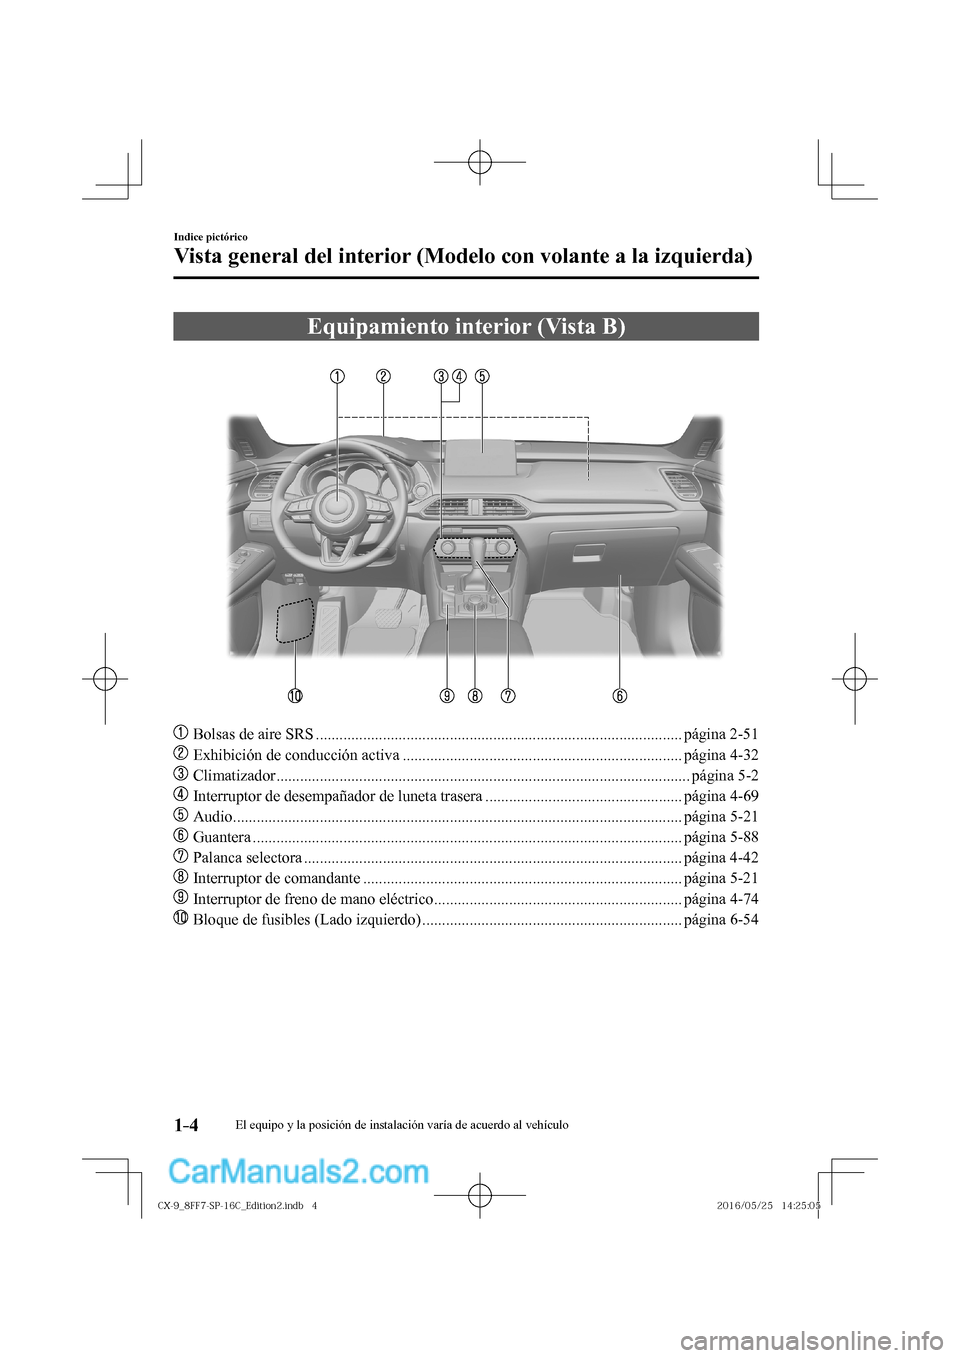 MAZDA MODEL CX-9 2017  Manual del propietario (in Spanish)  1–4
Indice pictórico
Vista general del interior (Modelo con volante a la izquierda)
 Equipamiento interior (Vista B)
    
���
  Bolsas de aire SRS ...............................................